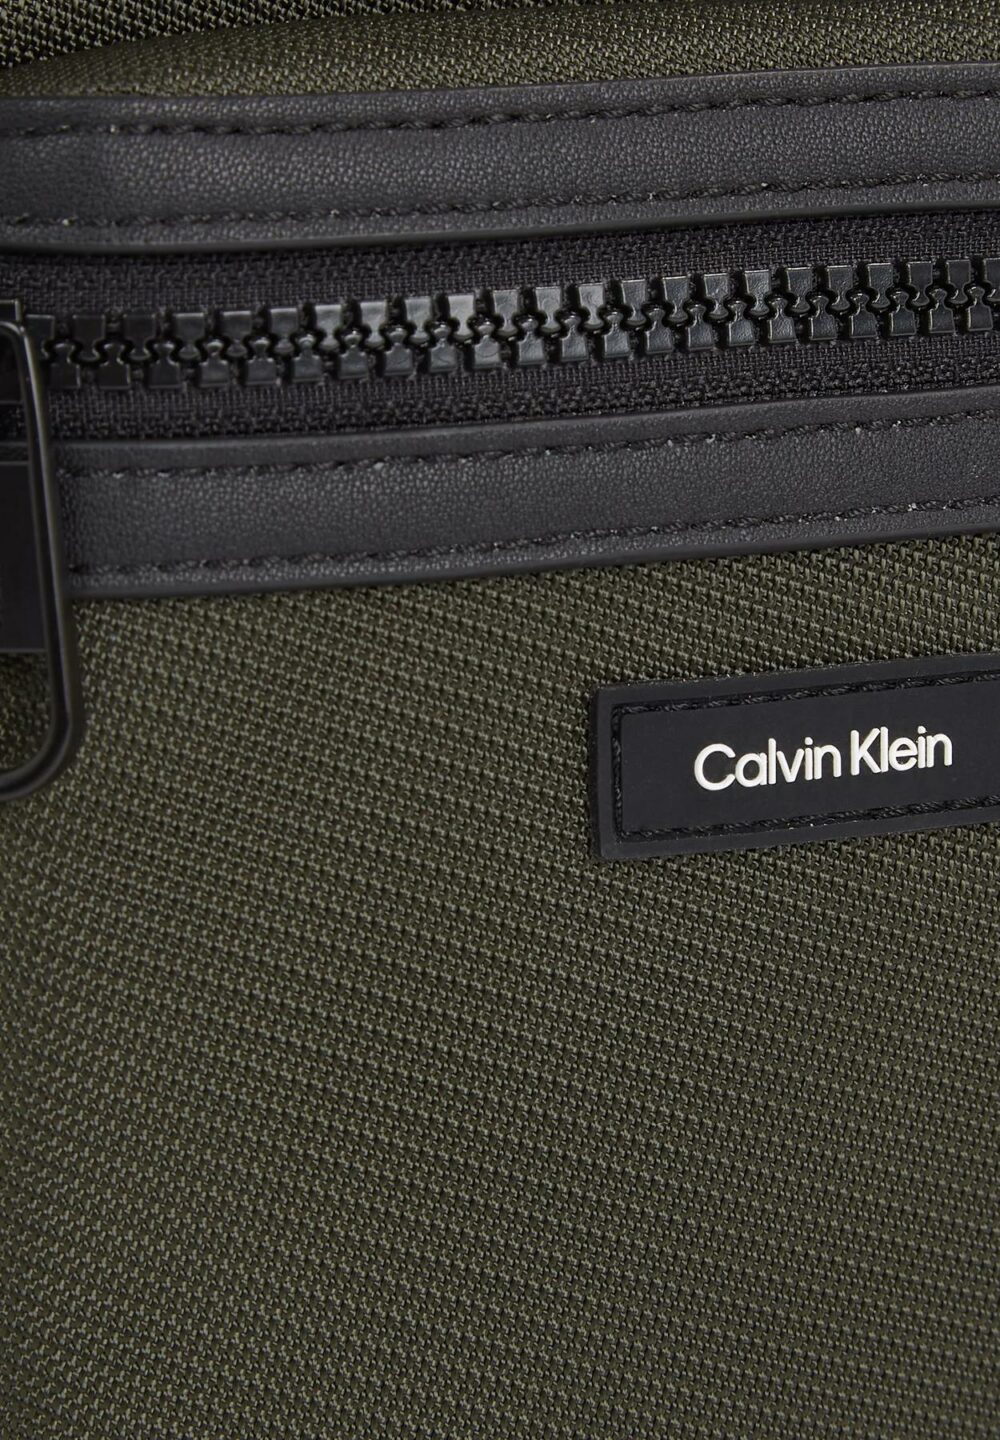 Borsa Calvin Klein ESSENTIAL CONV REPORTER Verde Scuro - Foto 3